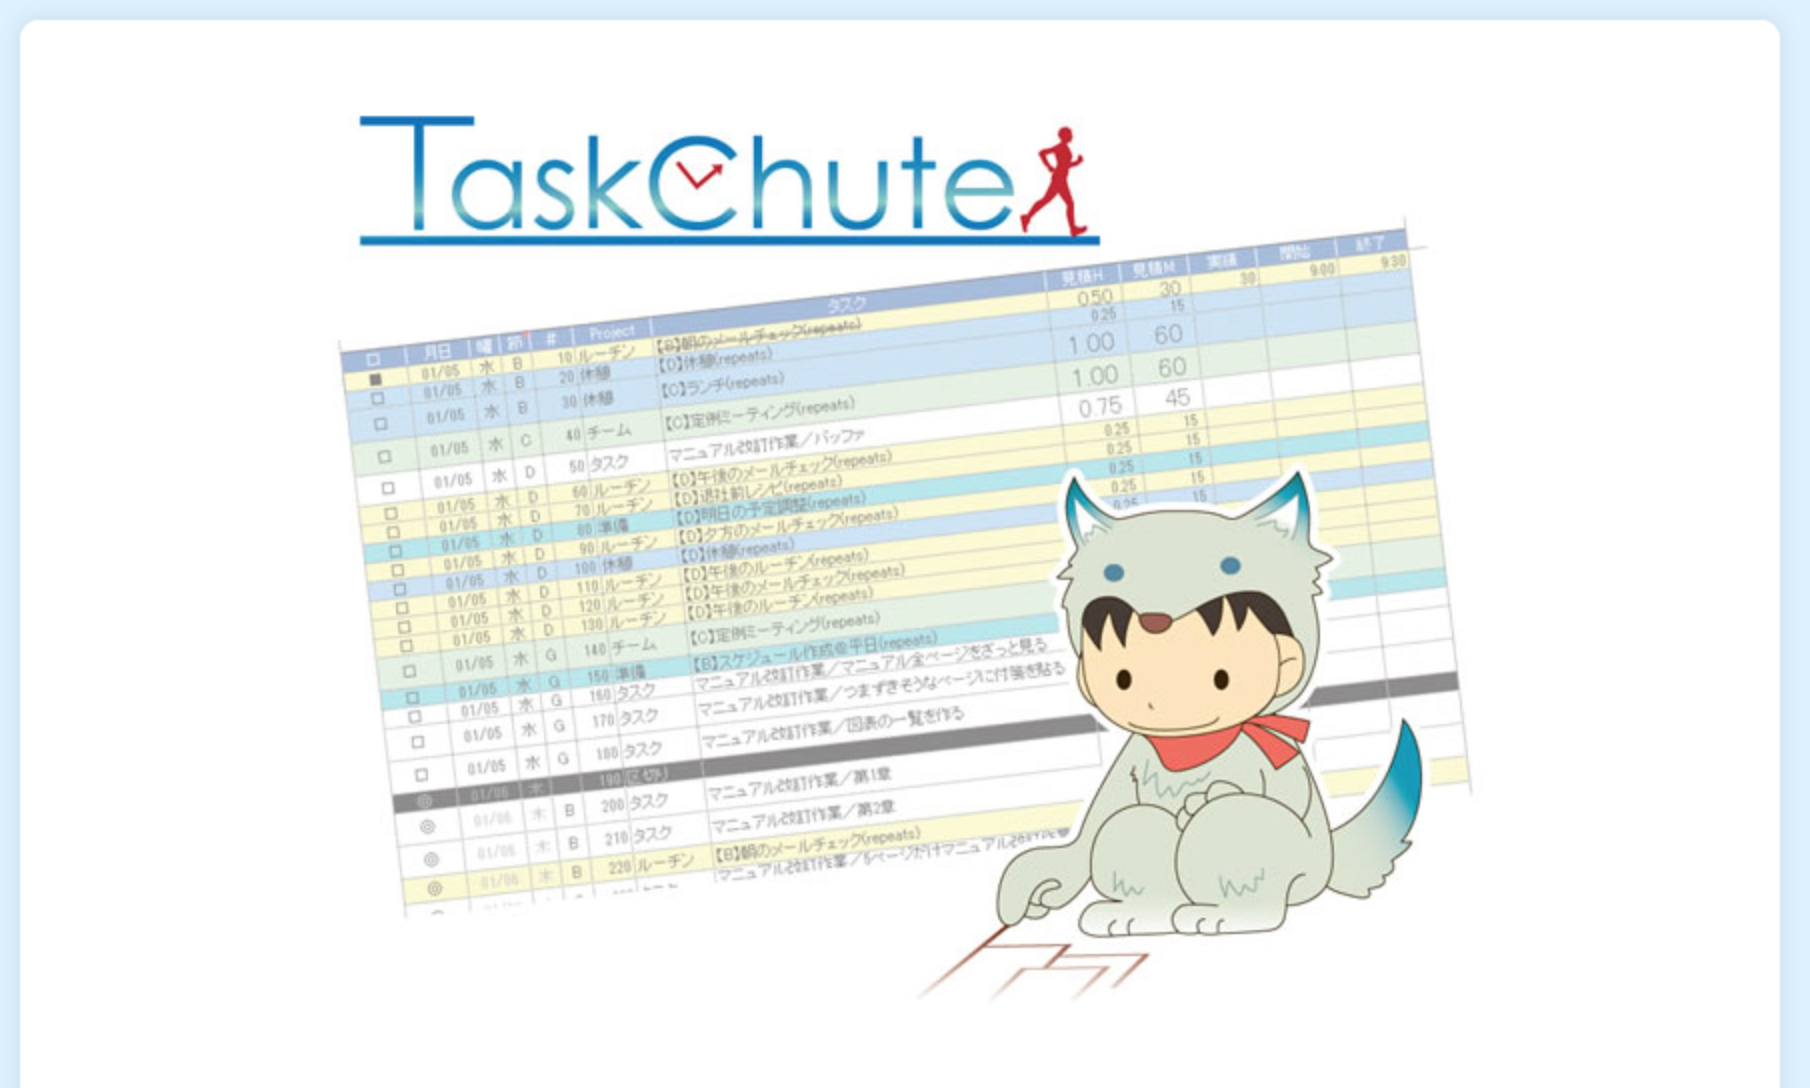 Excelで実行する世界最高峰のタスク管理ツール「TaskChute２」を導入しました